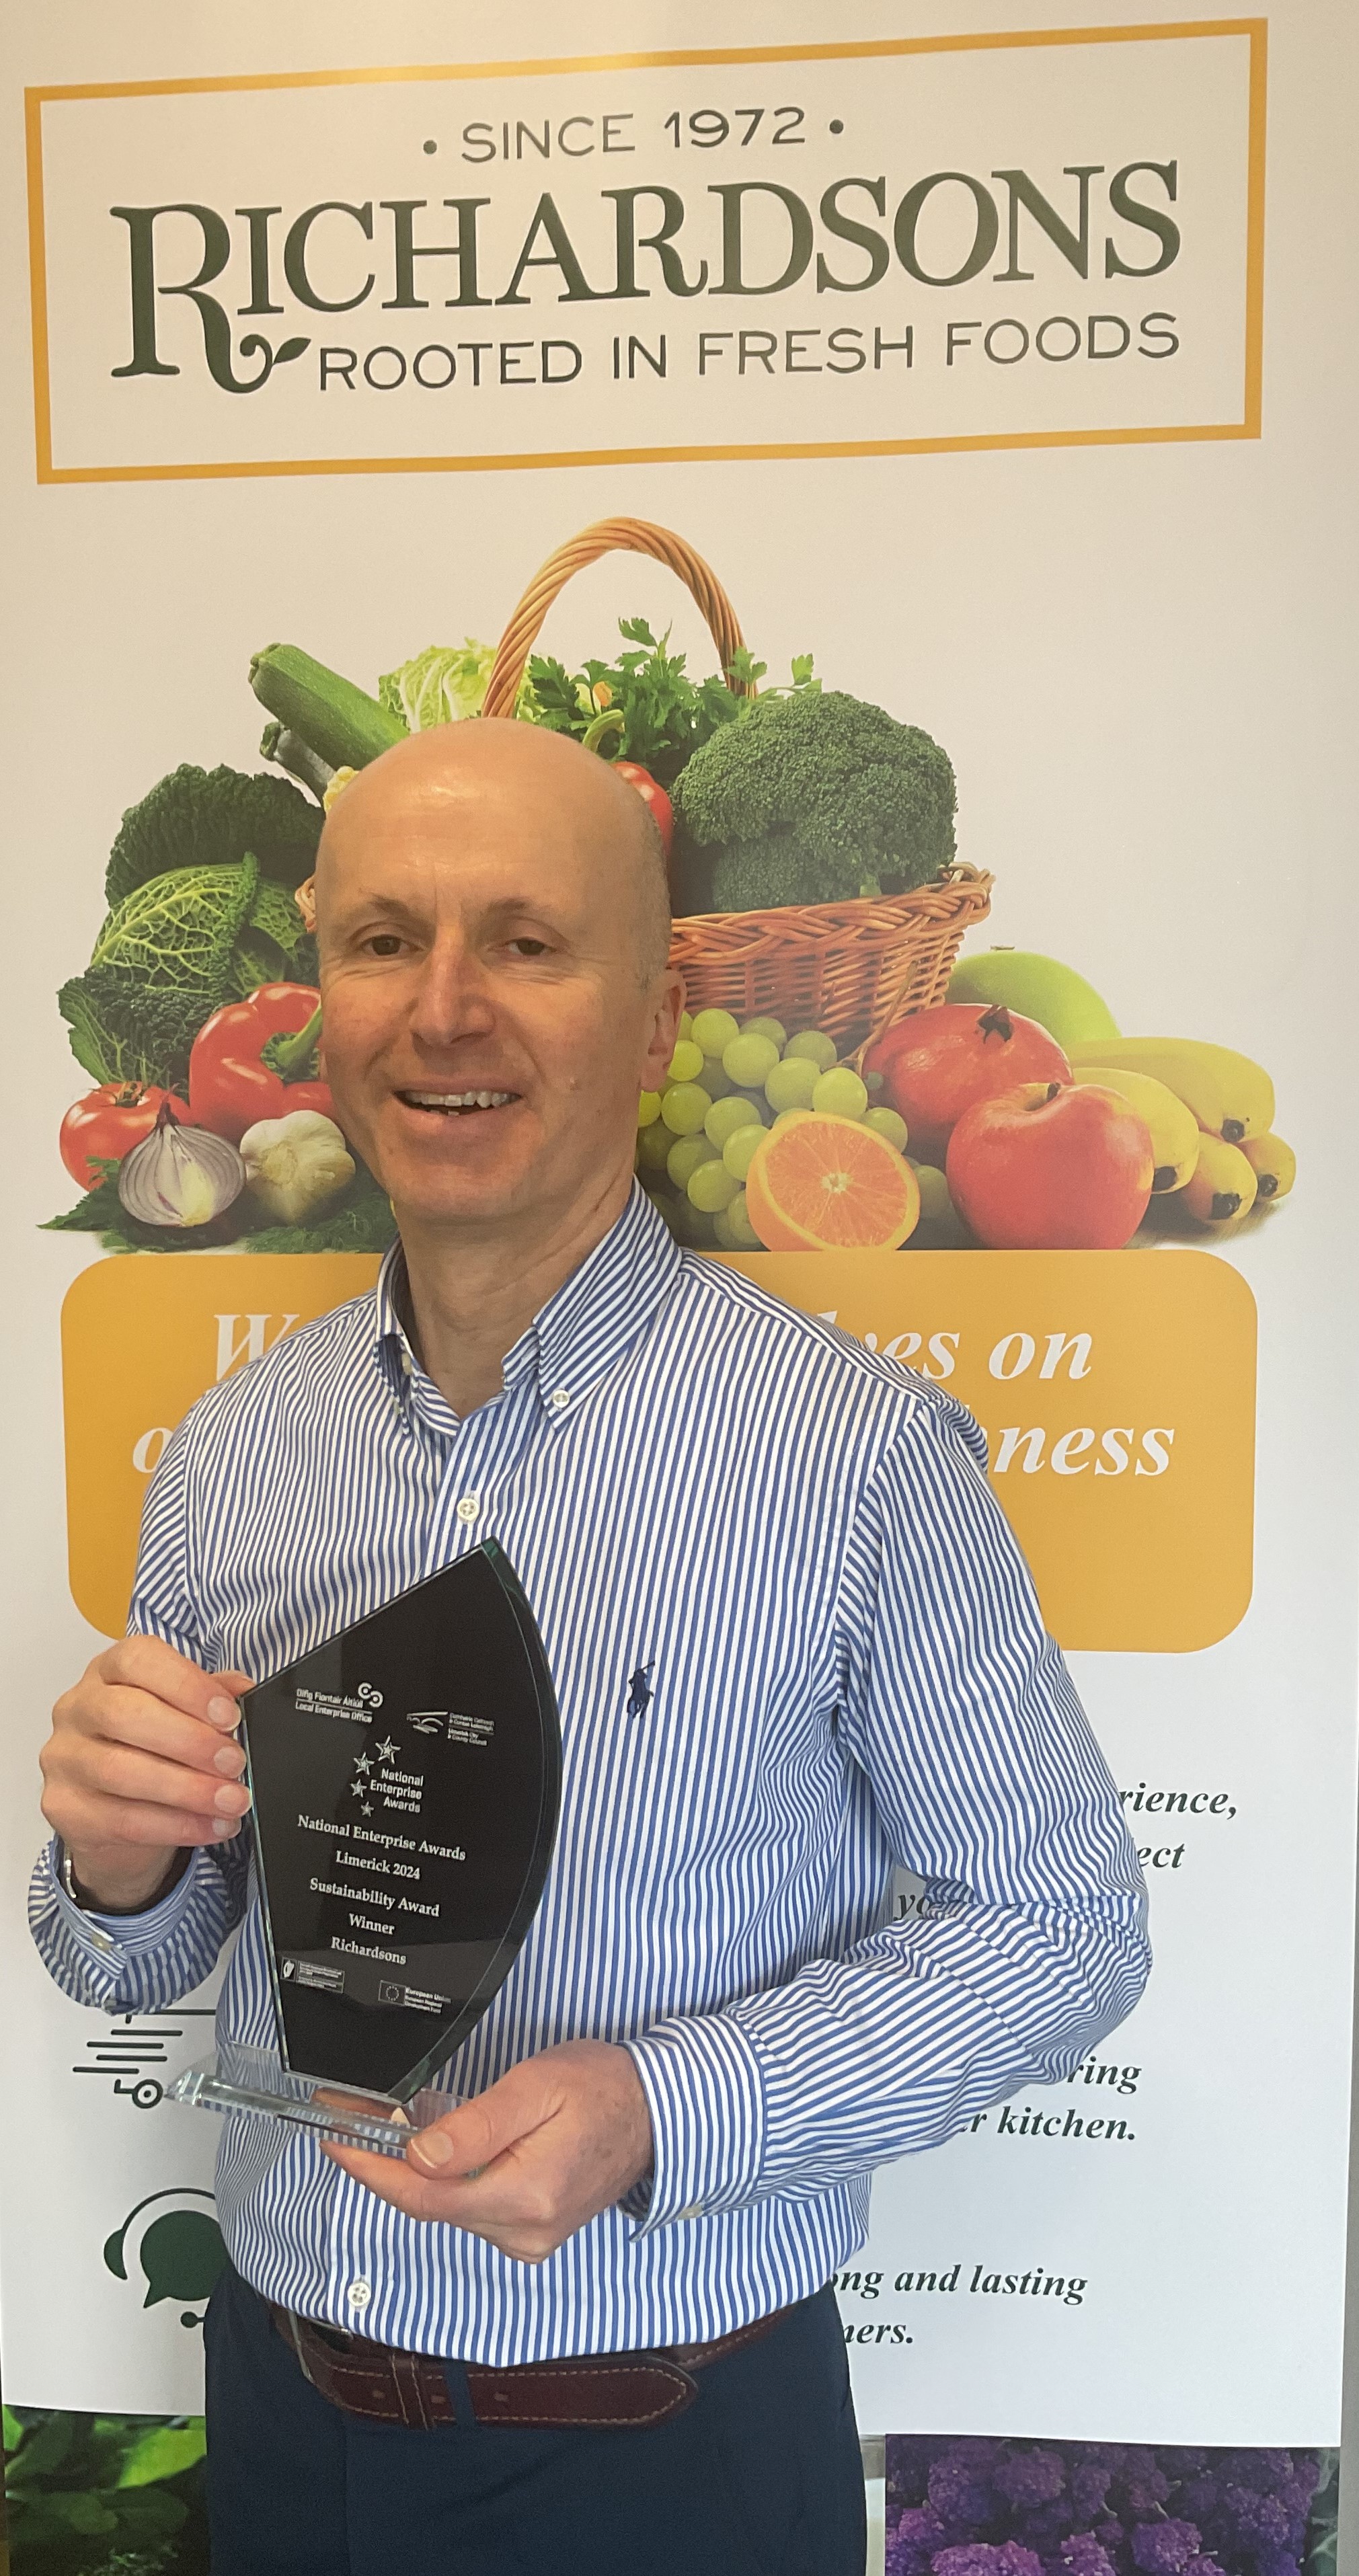 Richardsons - Limerick Winner of the National Enterprise Sustainability Awards